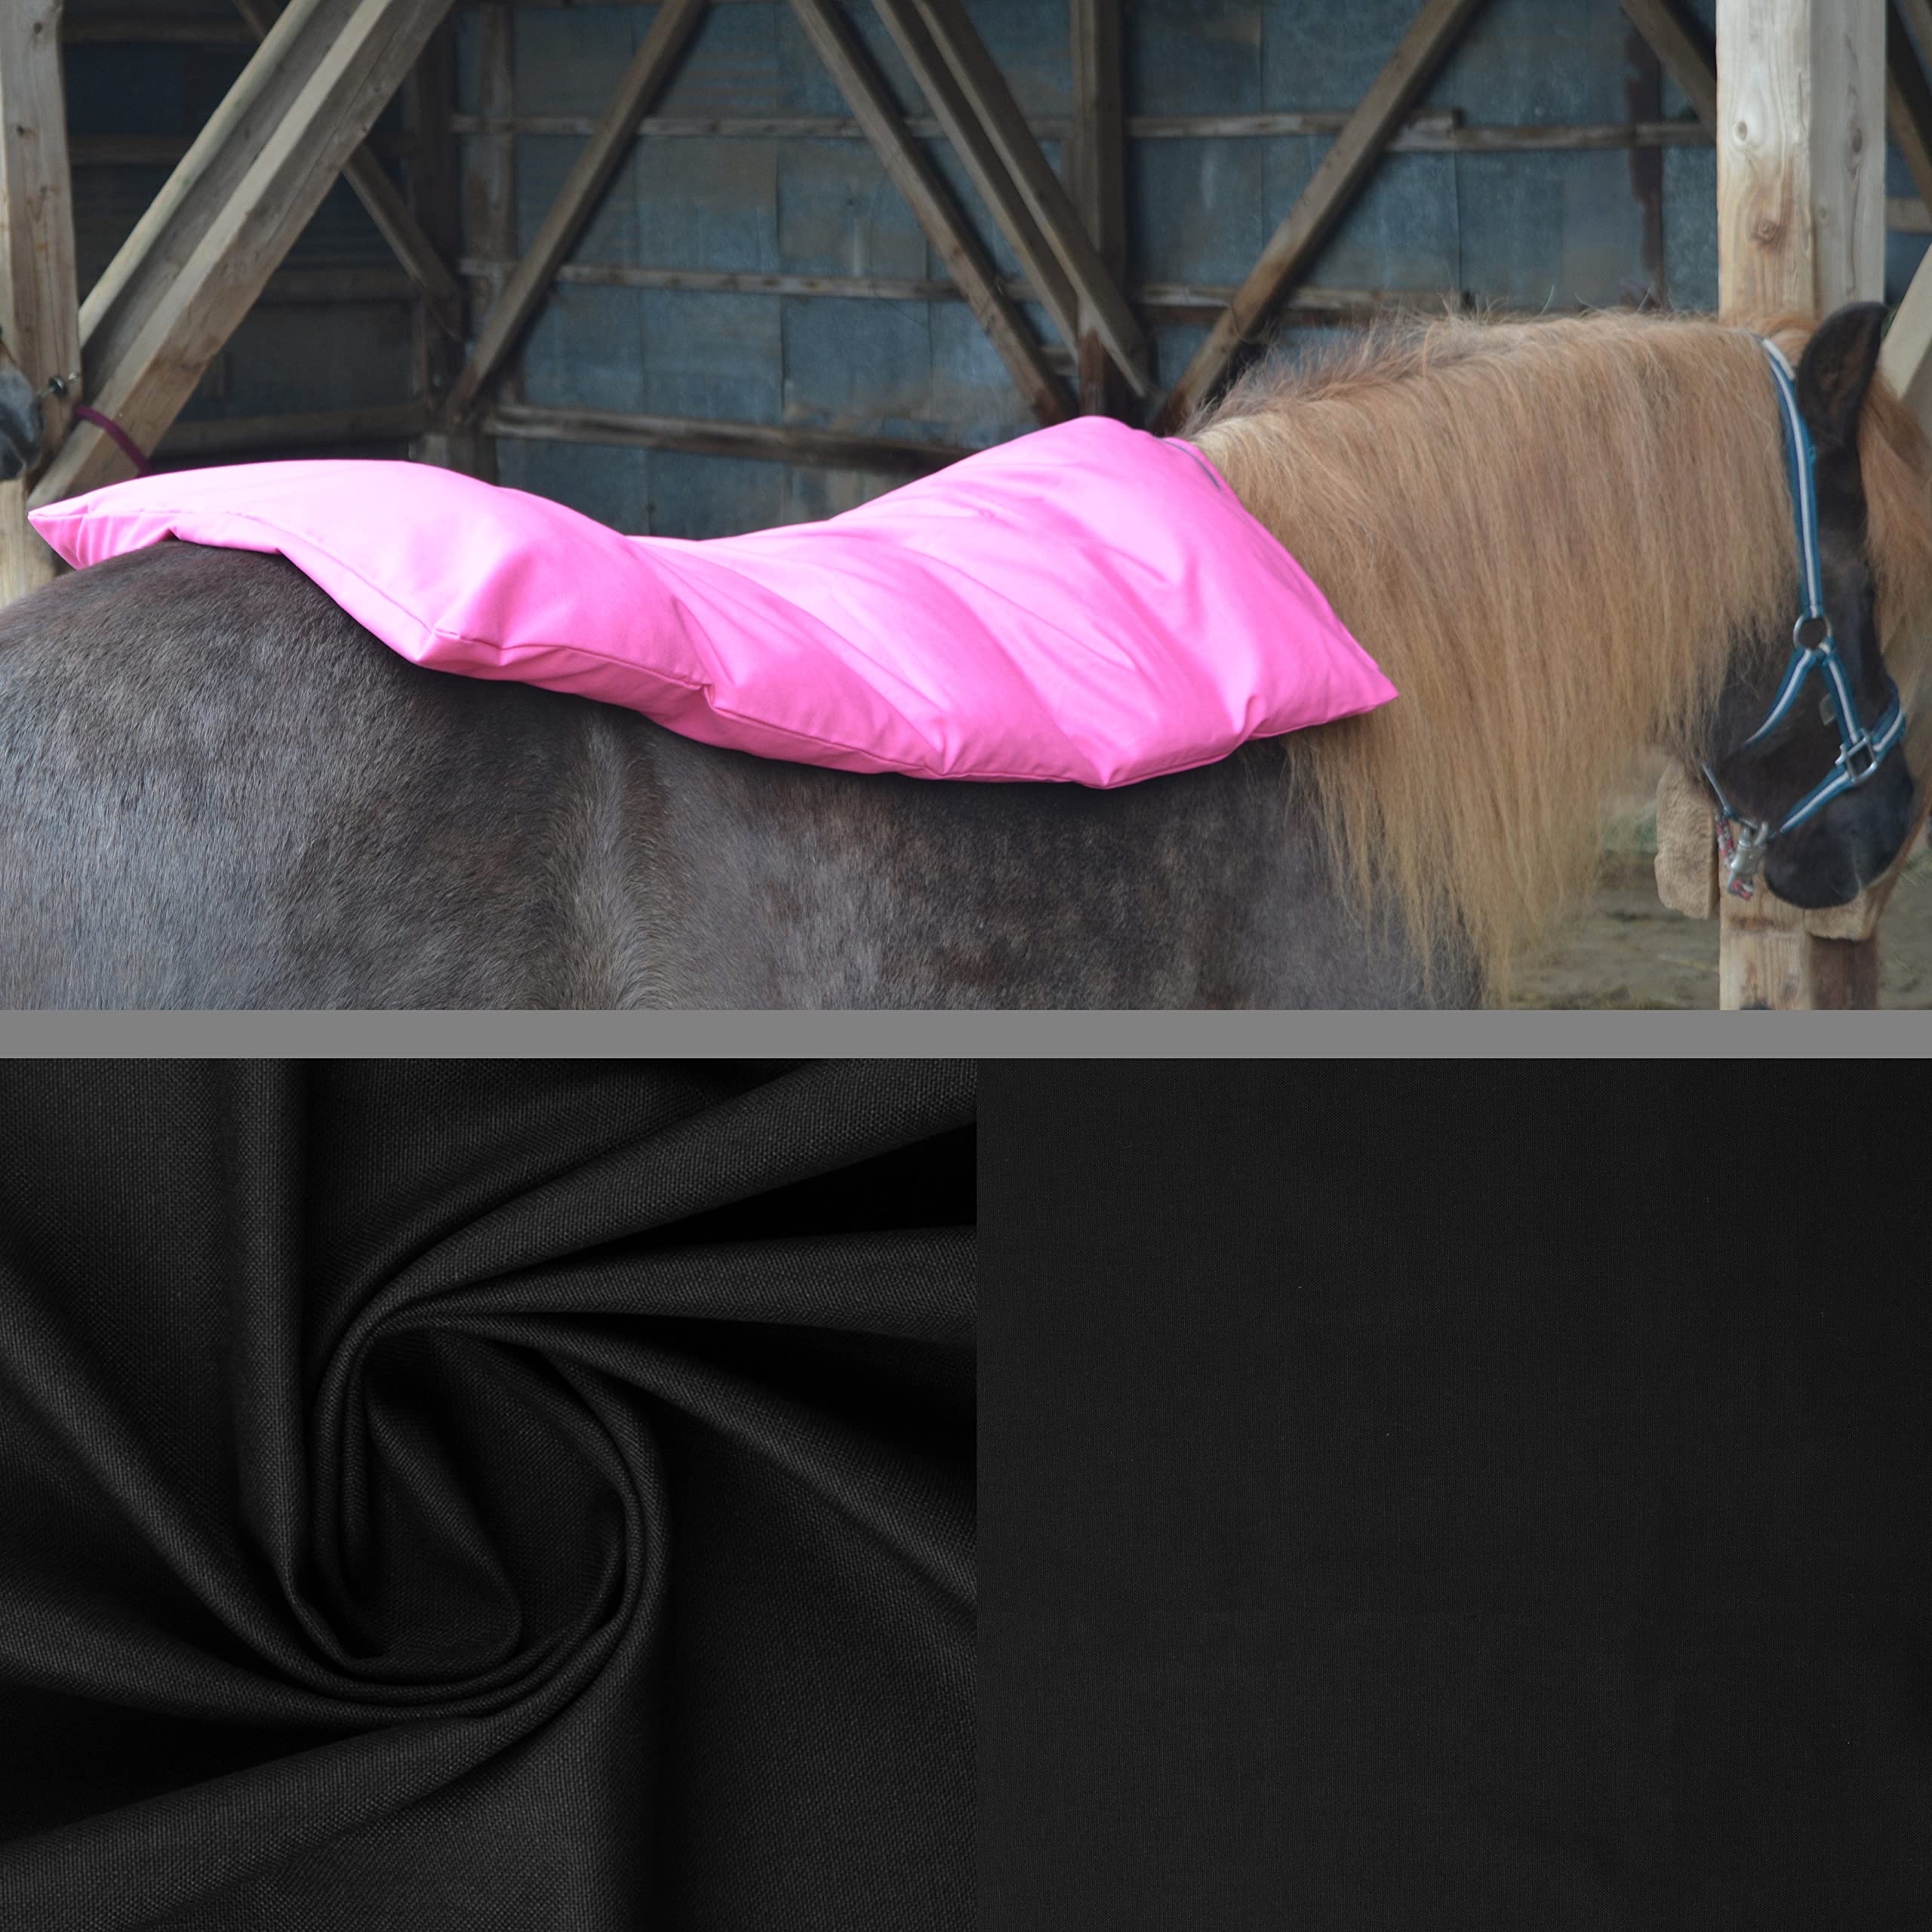 Dinkelspelzkissen Wärmekissen für Pferde Ponys Esel 1 farbig Schwarz Füllung Premium Plus 90x68